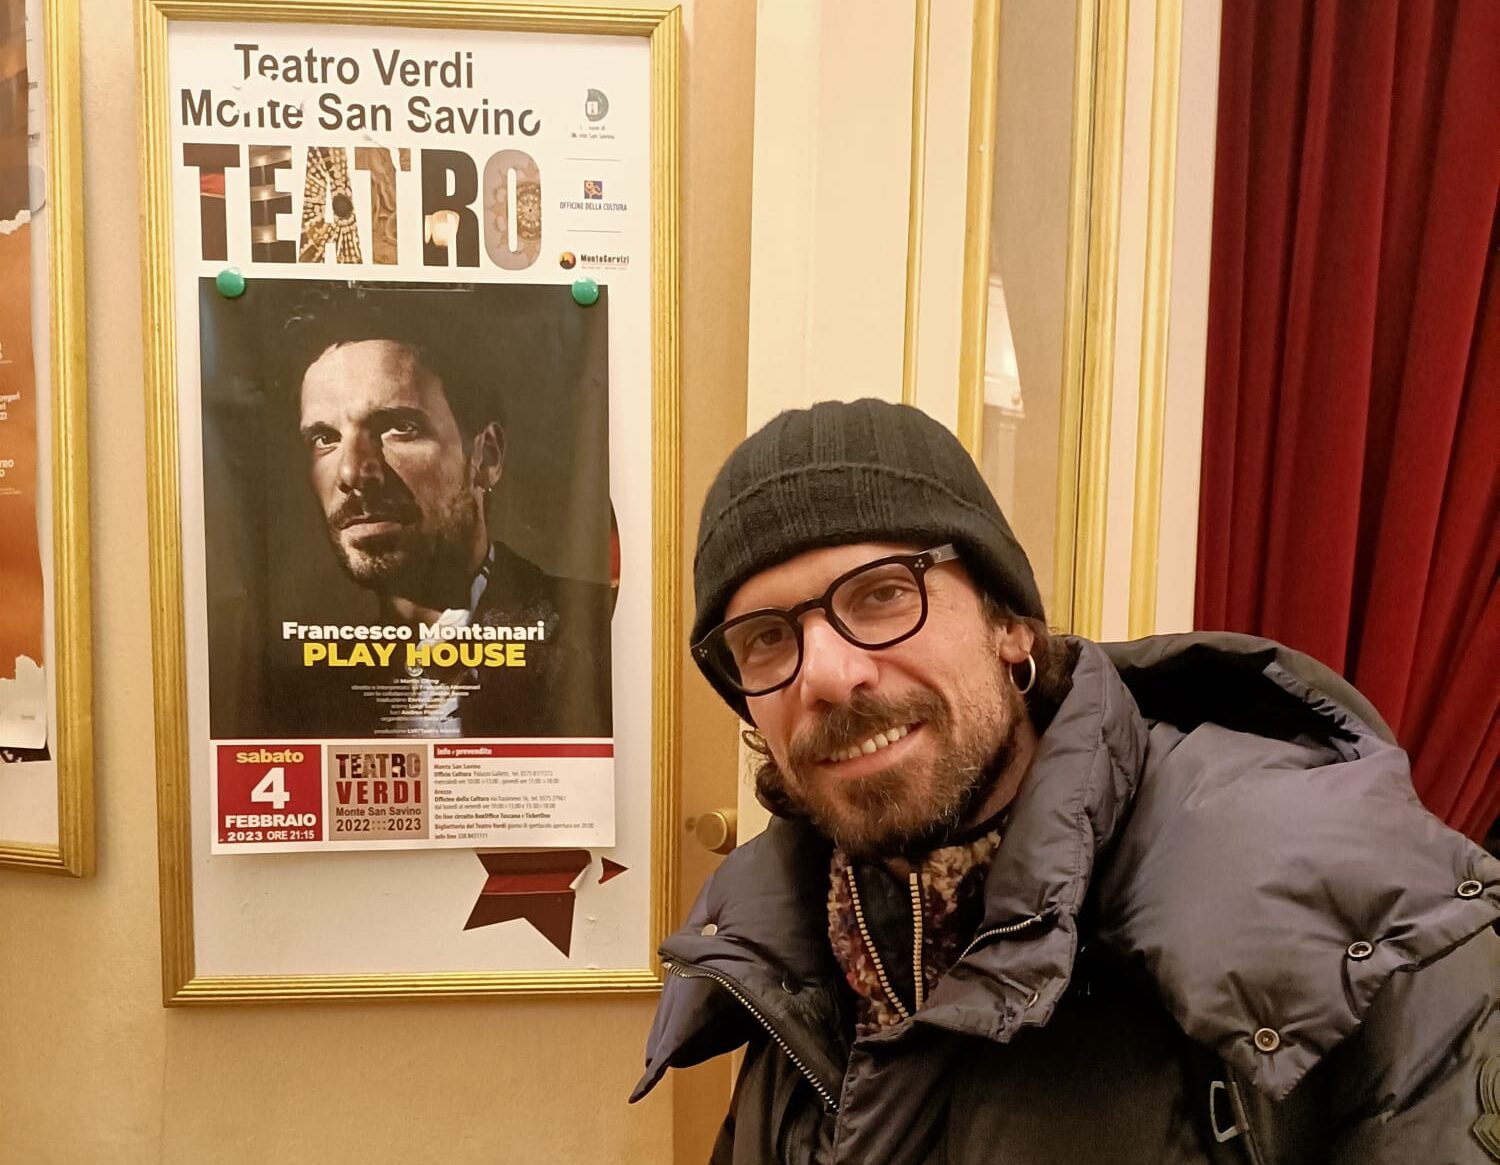 Bilancio positivo di fine stagione per il Teatro Verdi di Monte San Savino